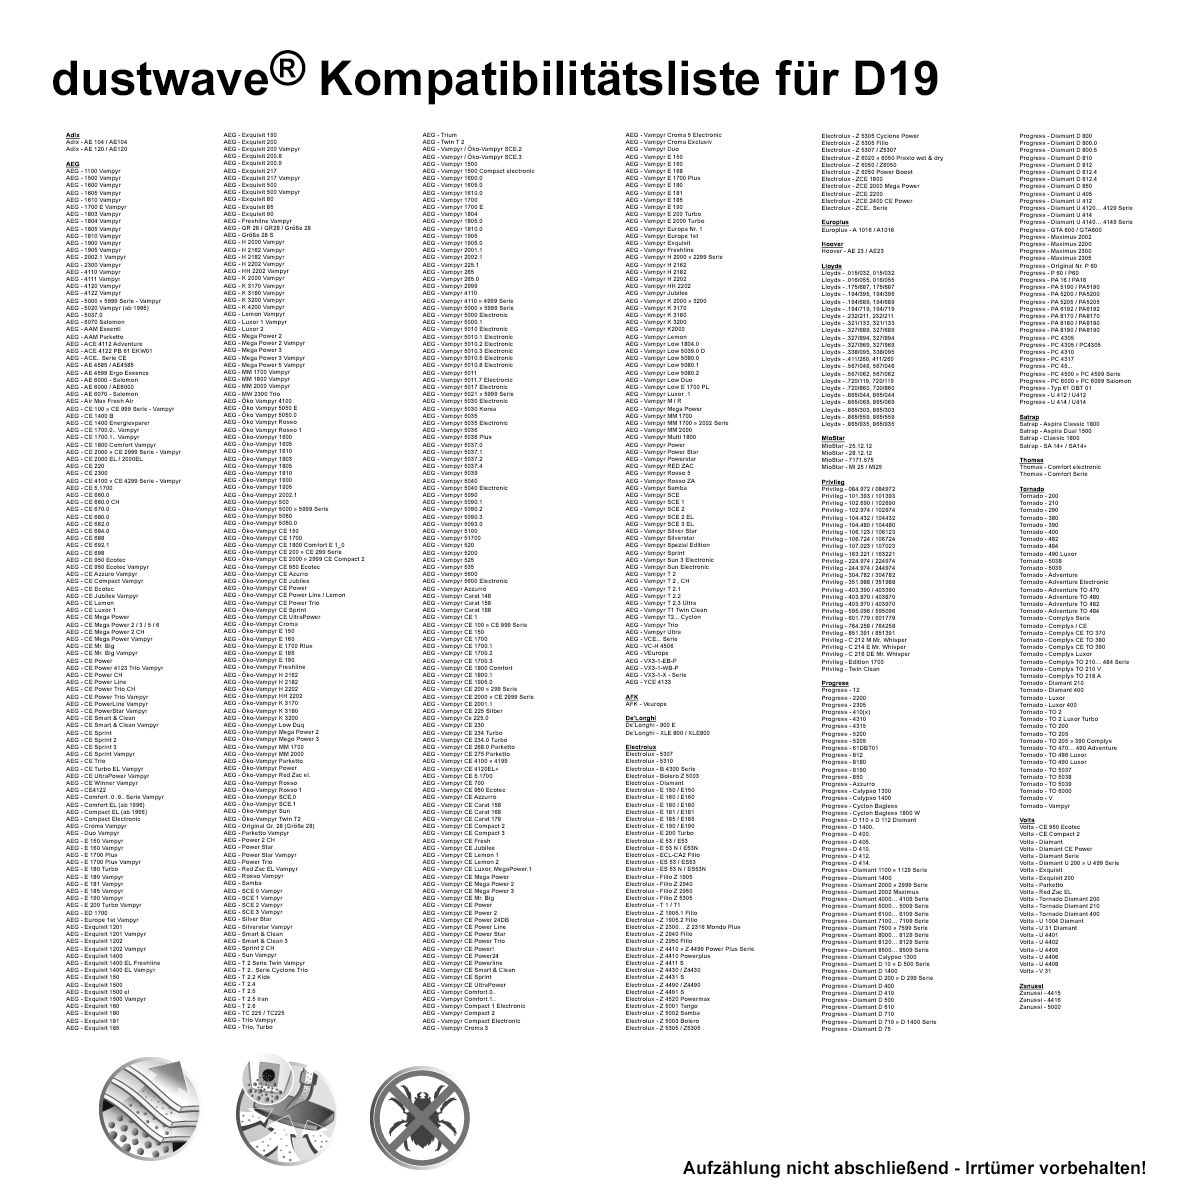 Dustwave® 20 Staubsaugerbeutel für AEG Vampyr CE 225 - hocheffizient, mehrlagiges Mikrovlies mit Hygieneverschluss - Made in Germany